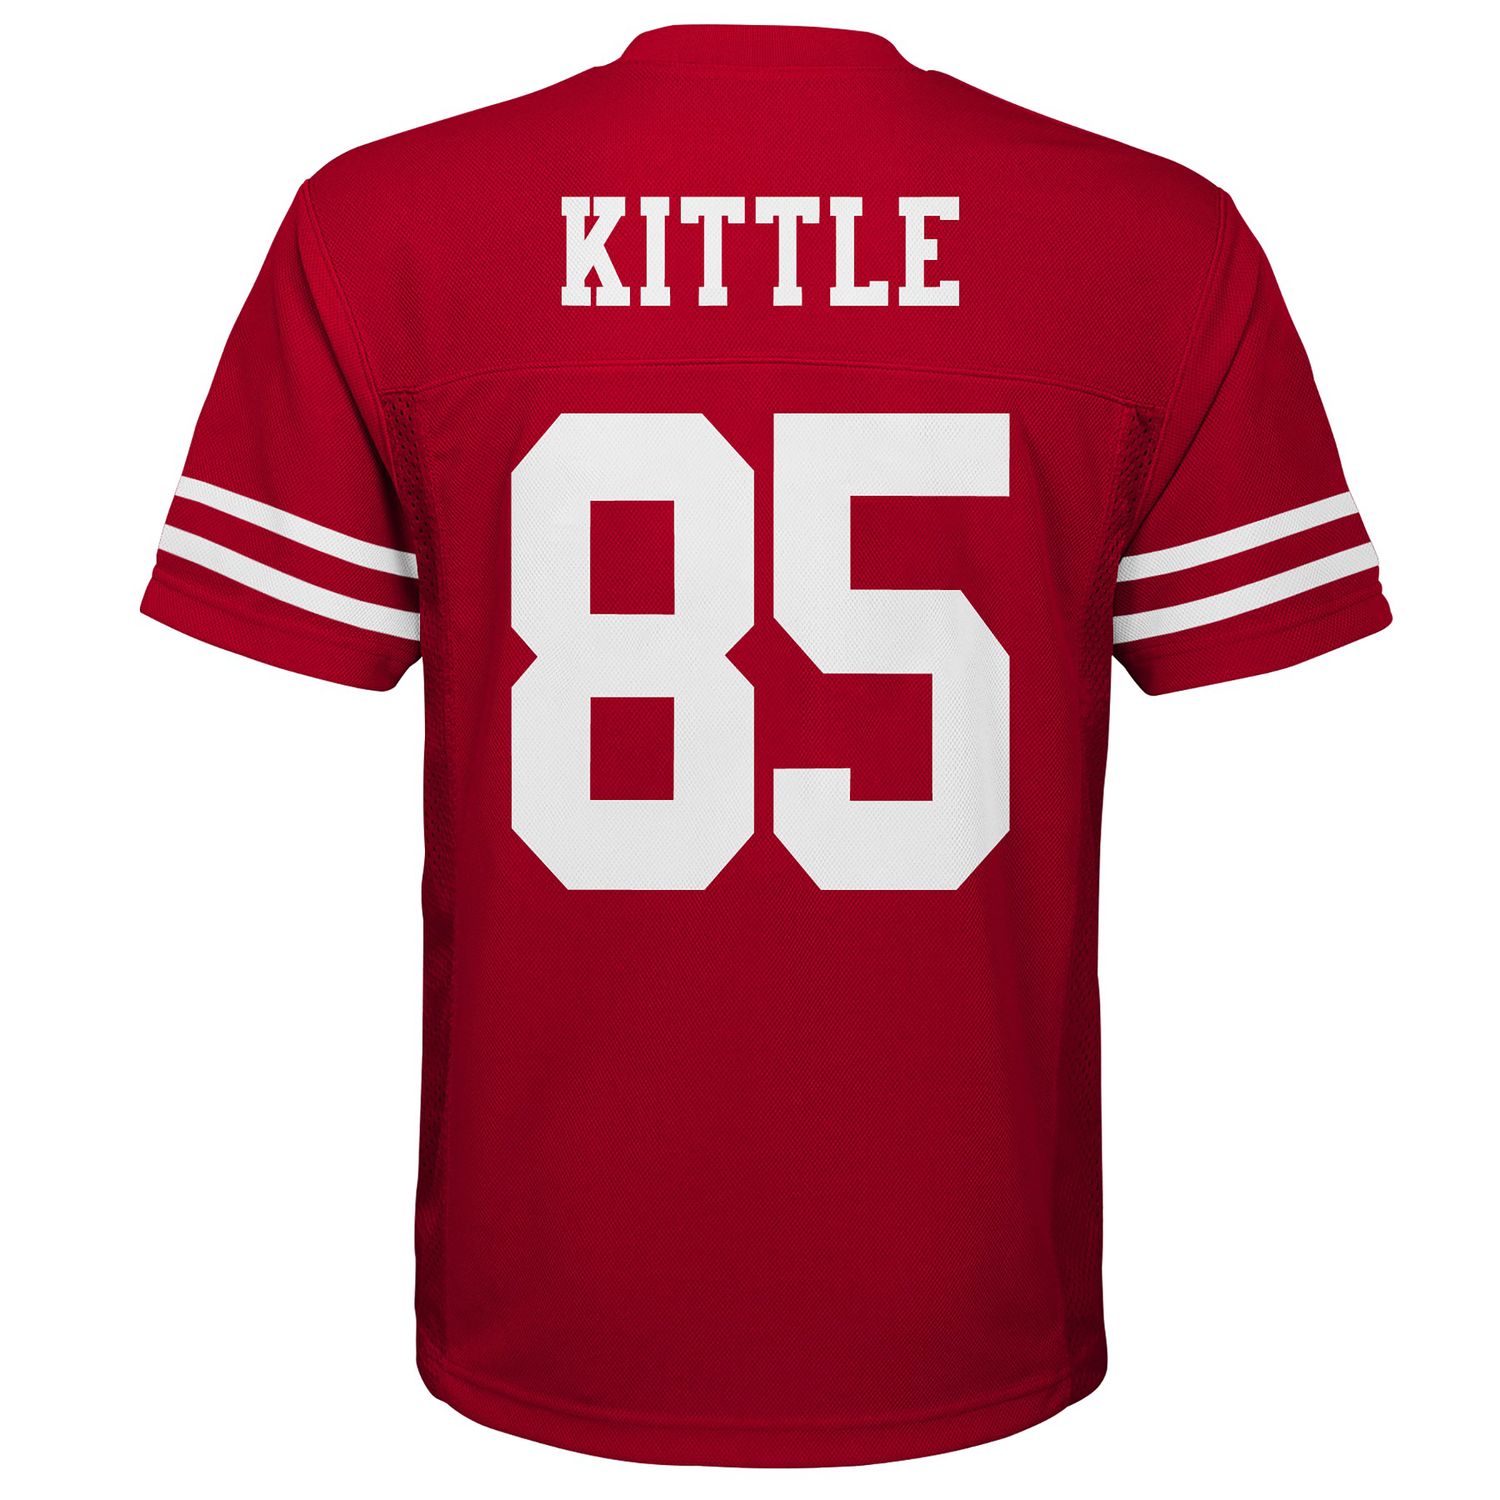 kittle jersey shirt